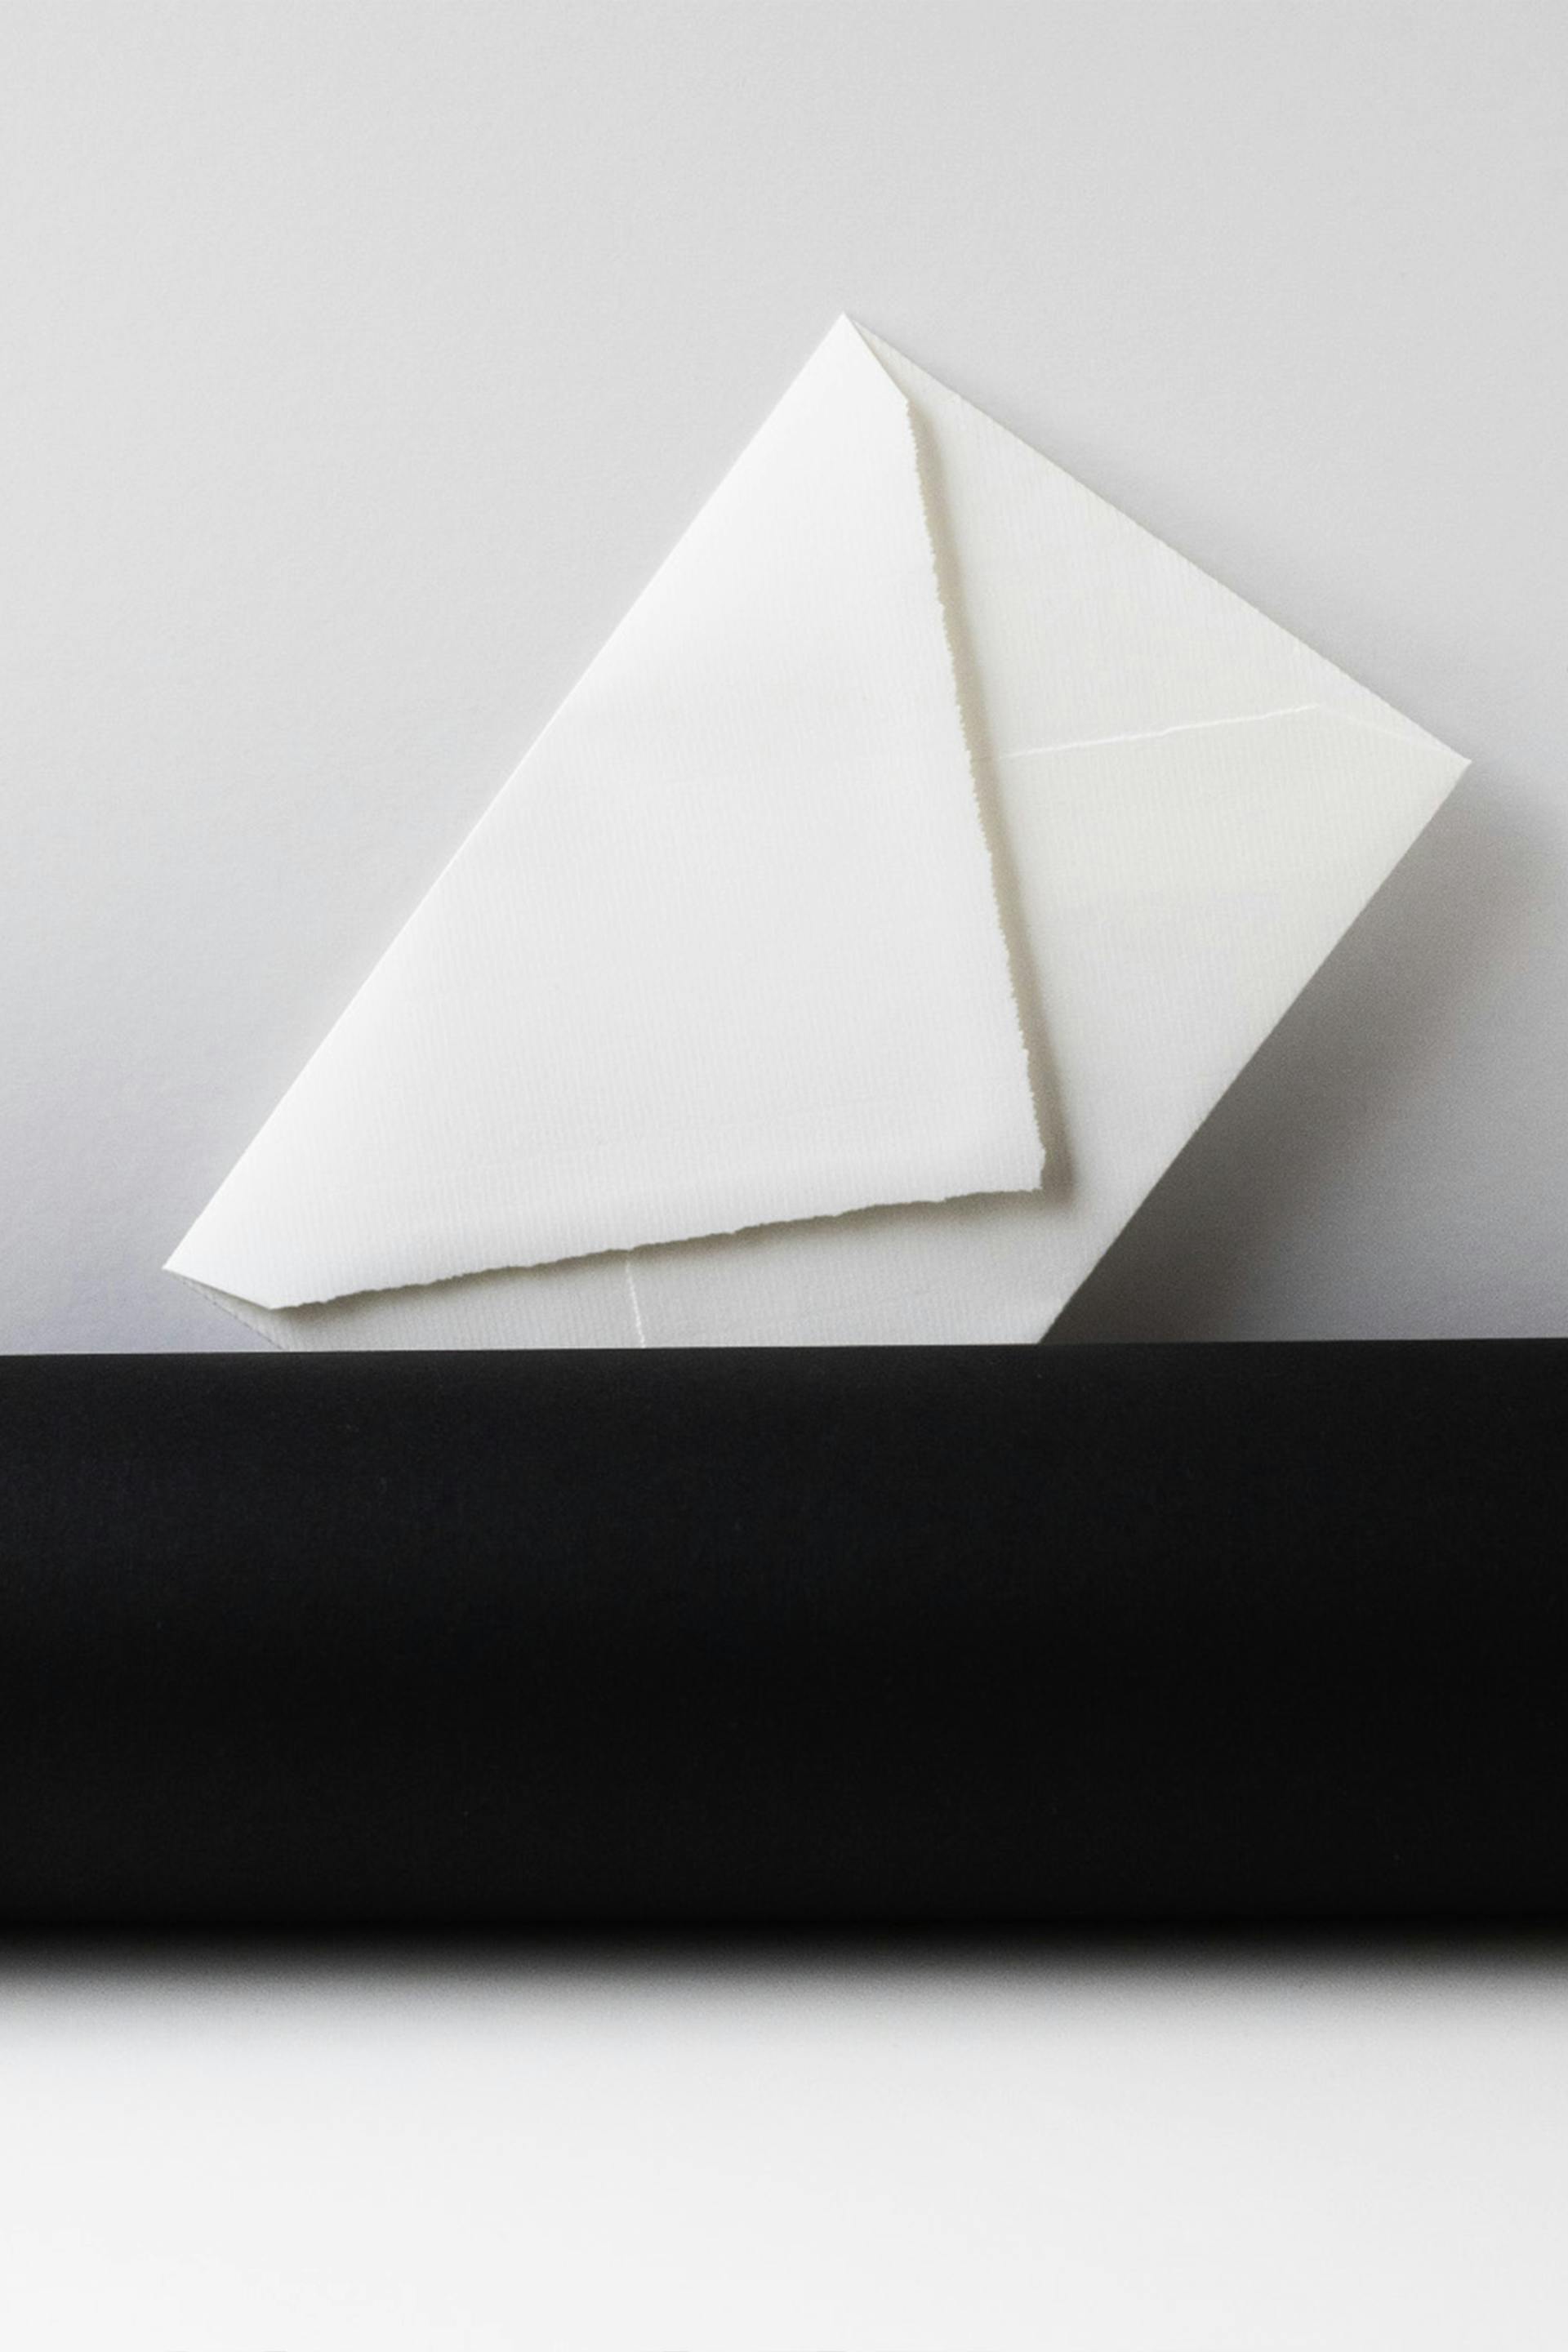 Ein weißer Umschlag | Quelle: Unsplash